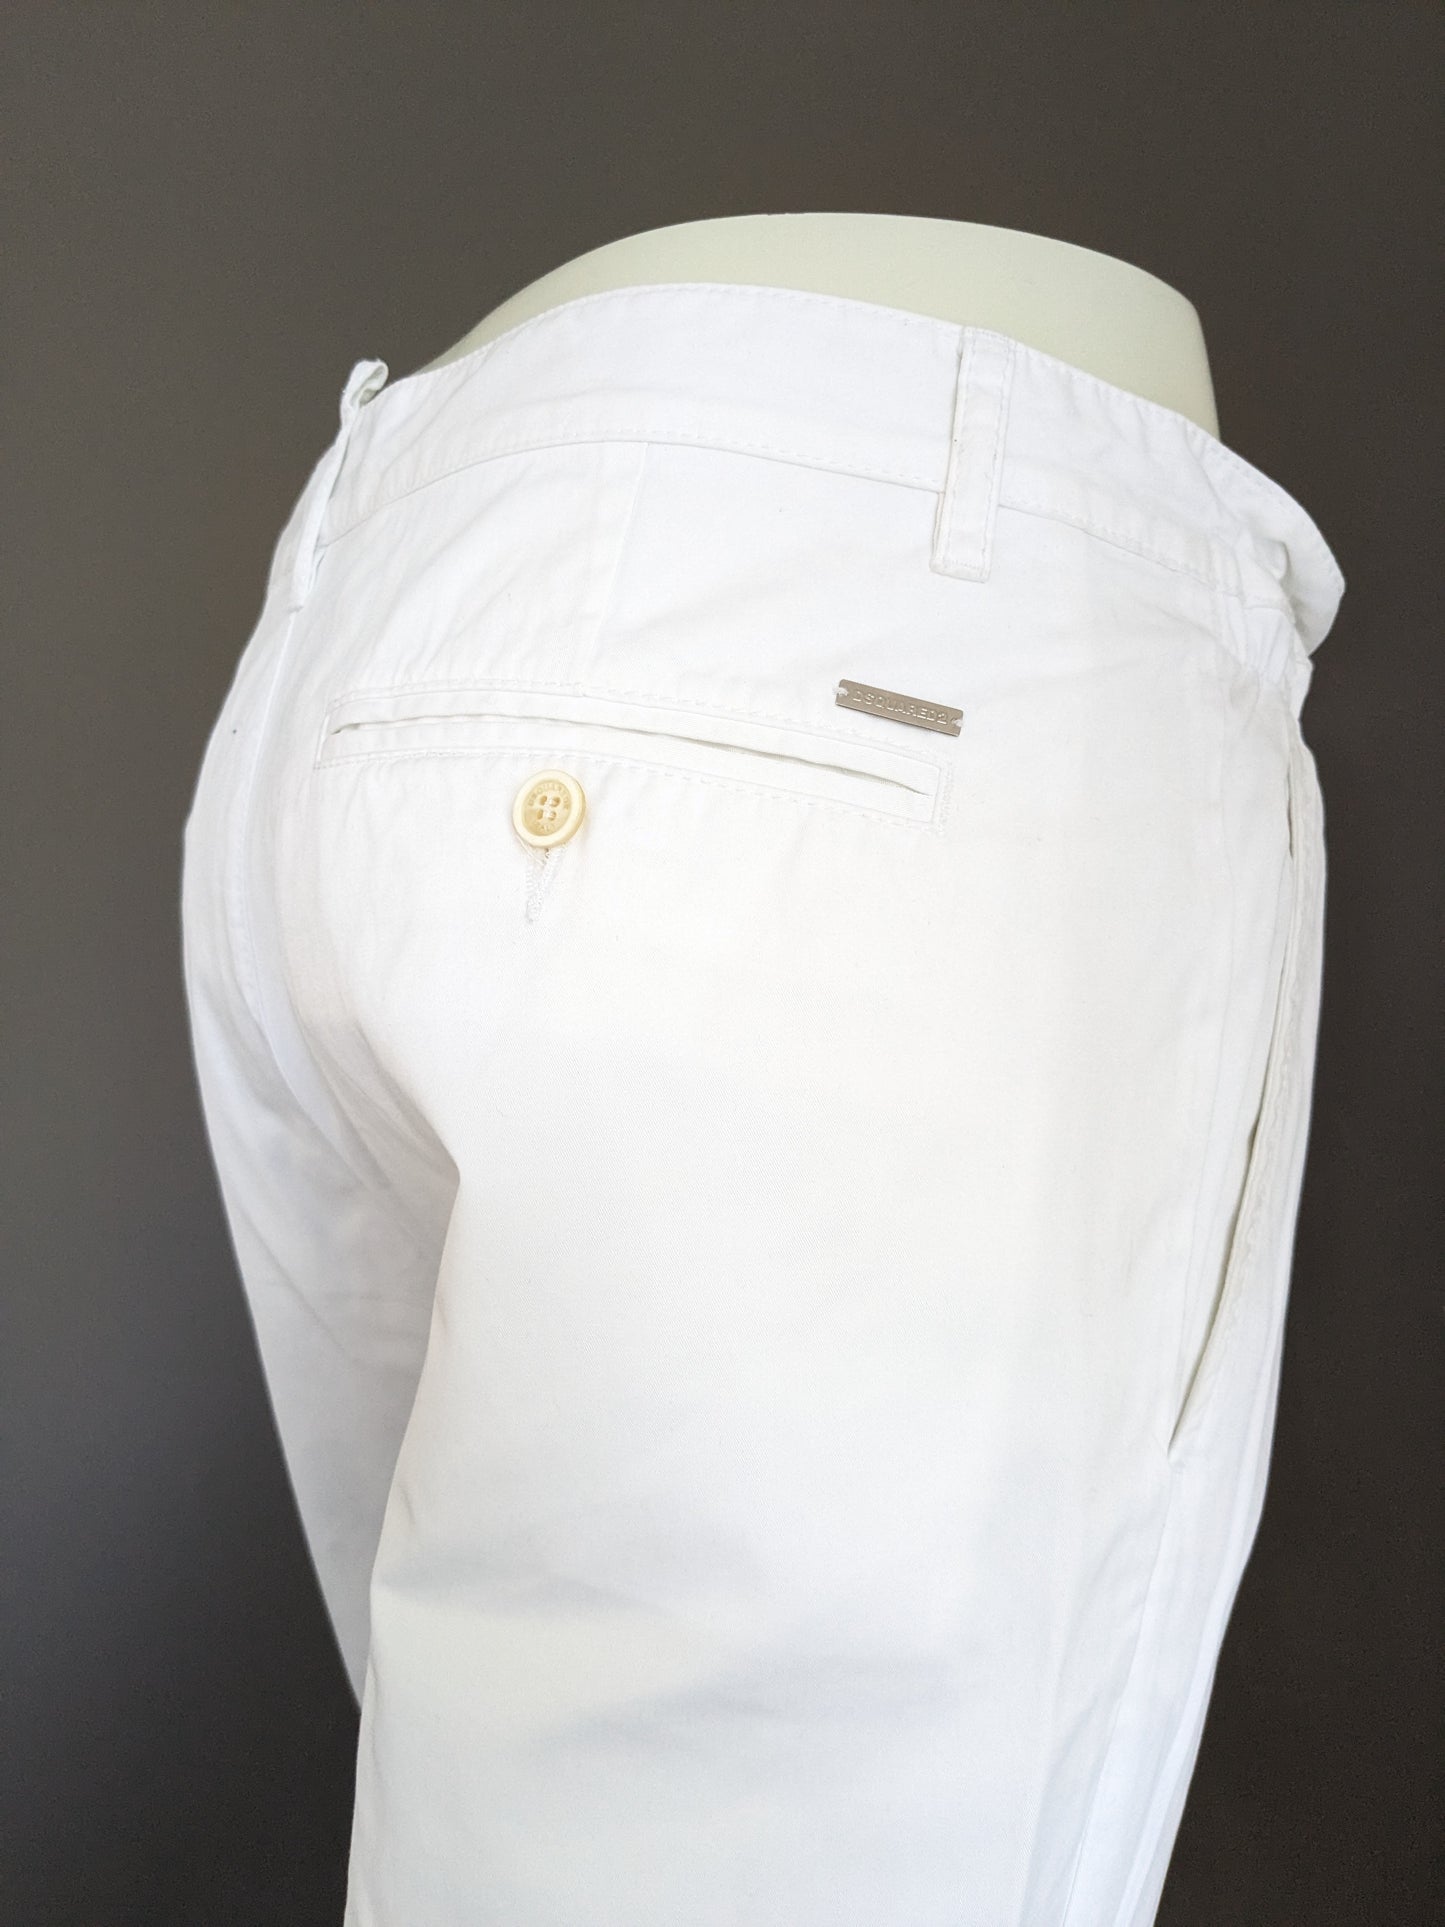 Pantalón Dsquared2 con cinturilla elástica. De color blanco. Talla 48/M.